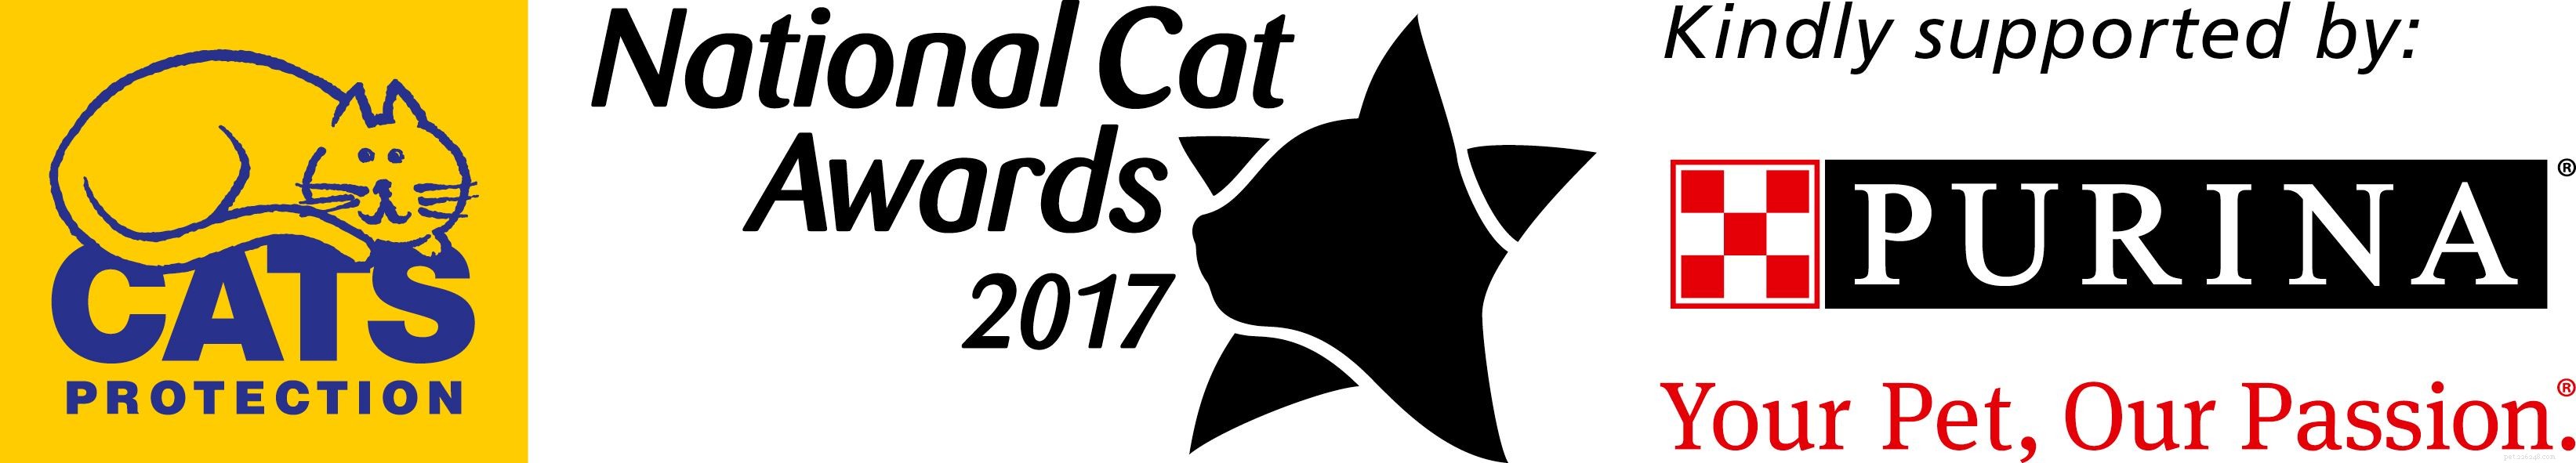 Découvrez les finalistes de la catégorie Furr-ever Friends des National Cat Awards 2017 !